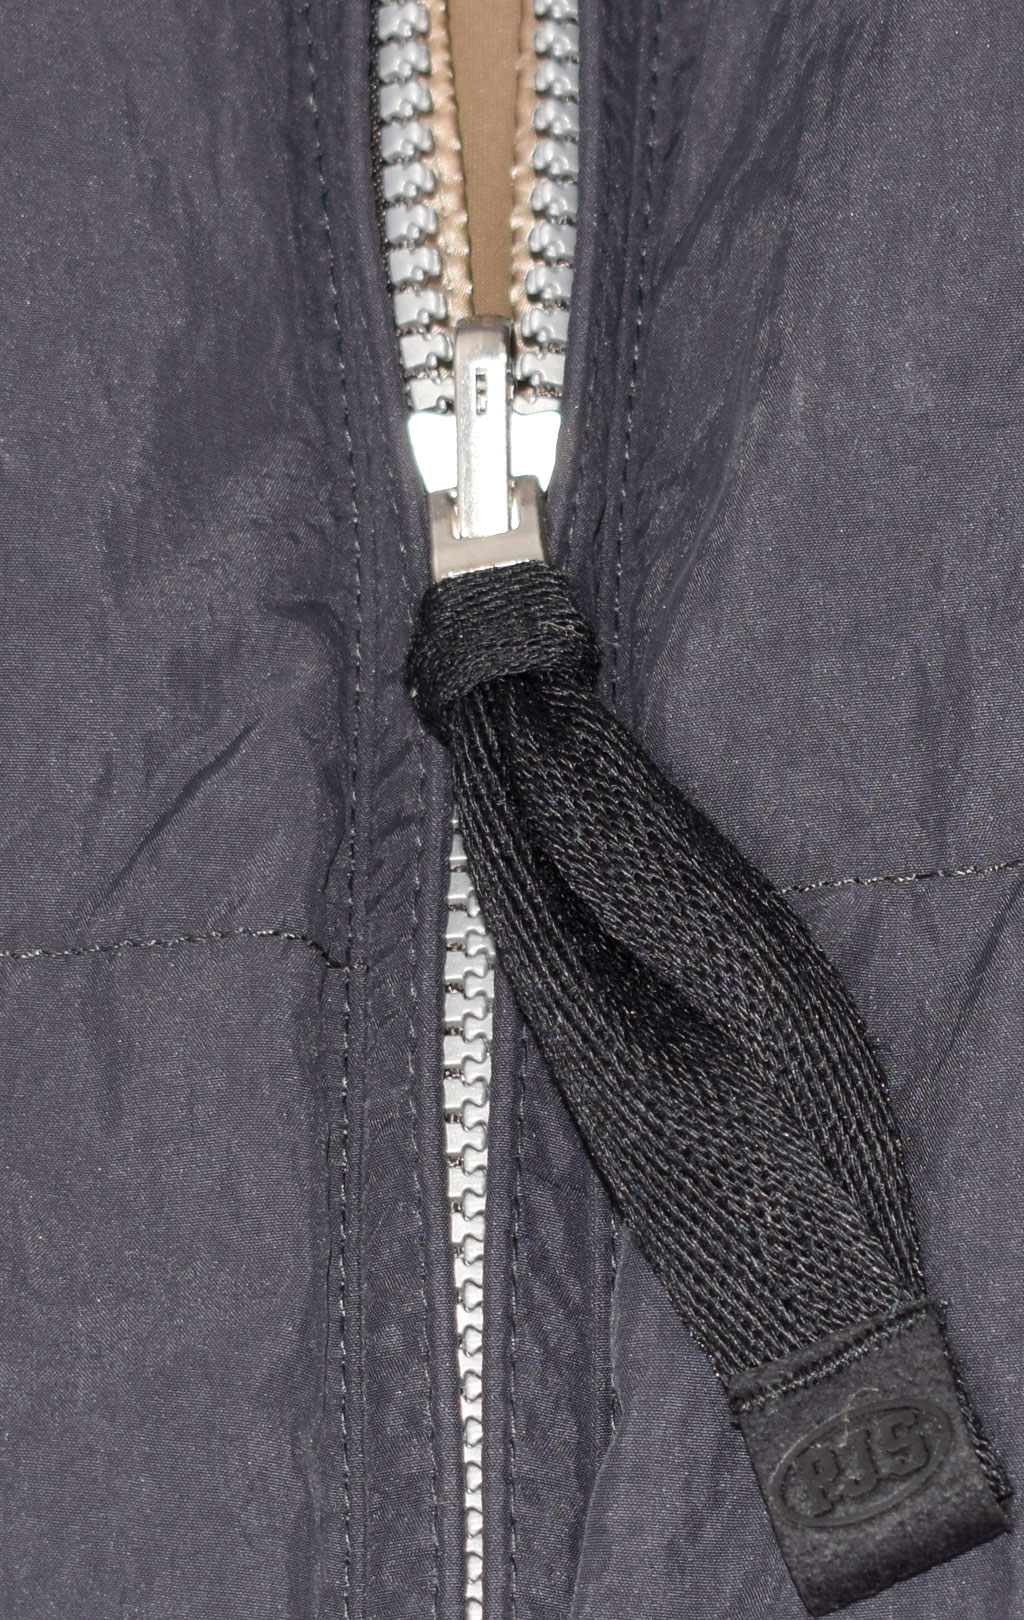 Женское пальто пуховое PARAJUMPERS SLEEPING BAG двустороннее FW 21/22 pencil atmosphere 